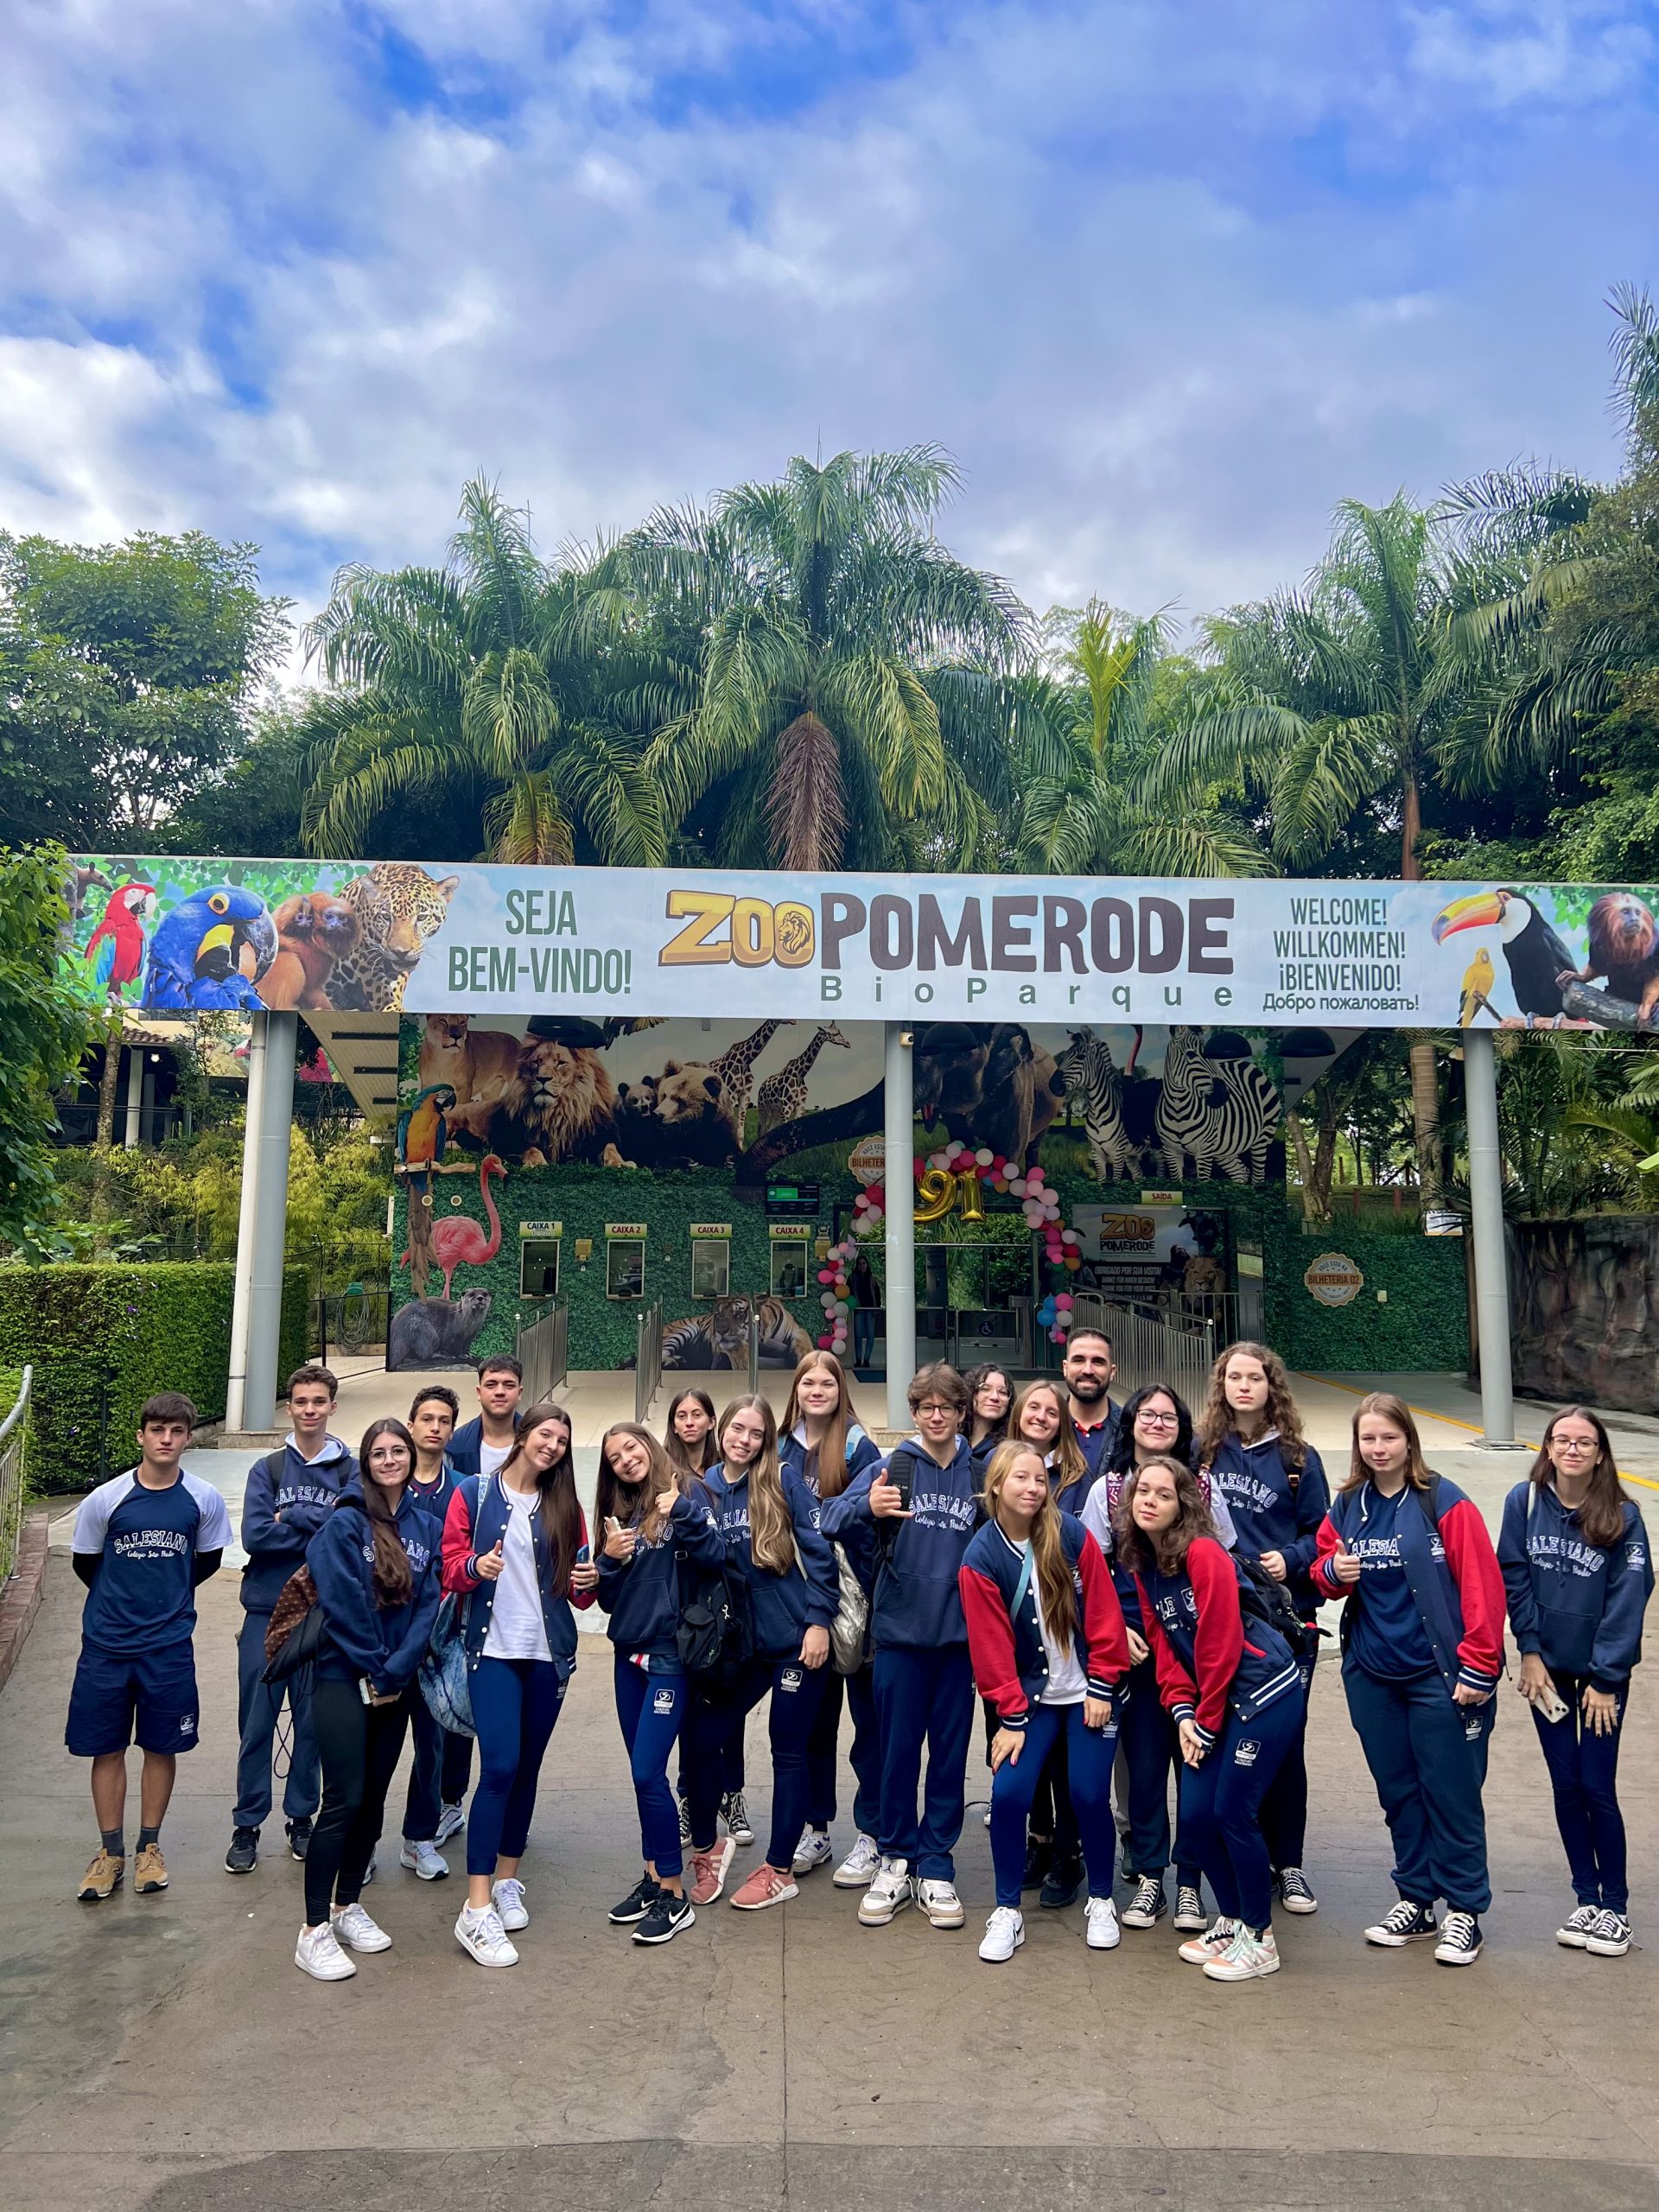 Itinerário Zoologia – Passeio de estudos ao Zoológico de Pomerode: Conhecendo a vida selvagem de perto! 🦁🐾